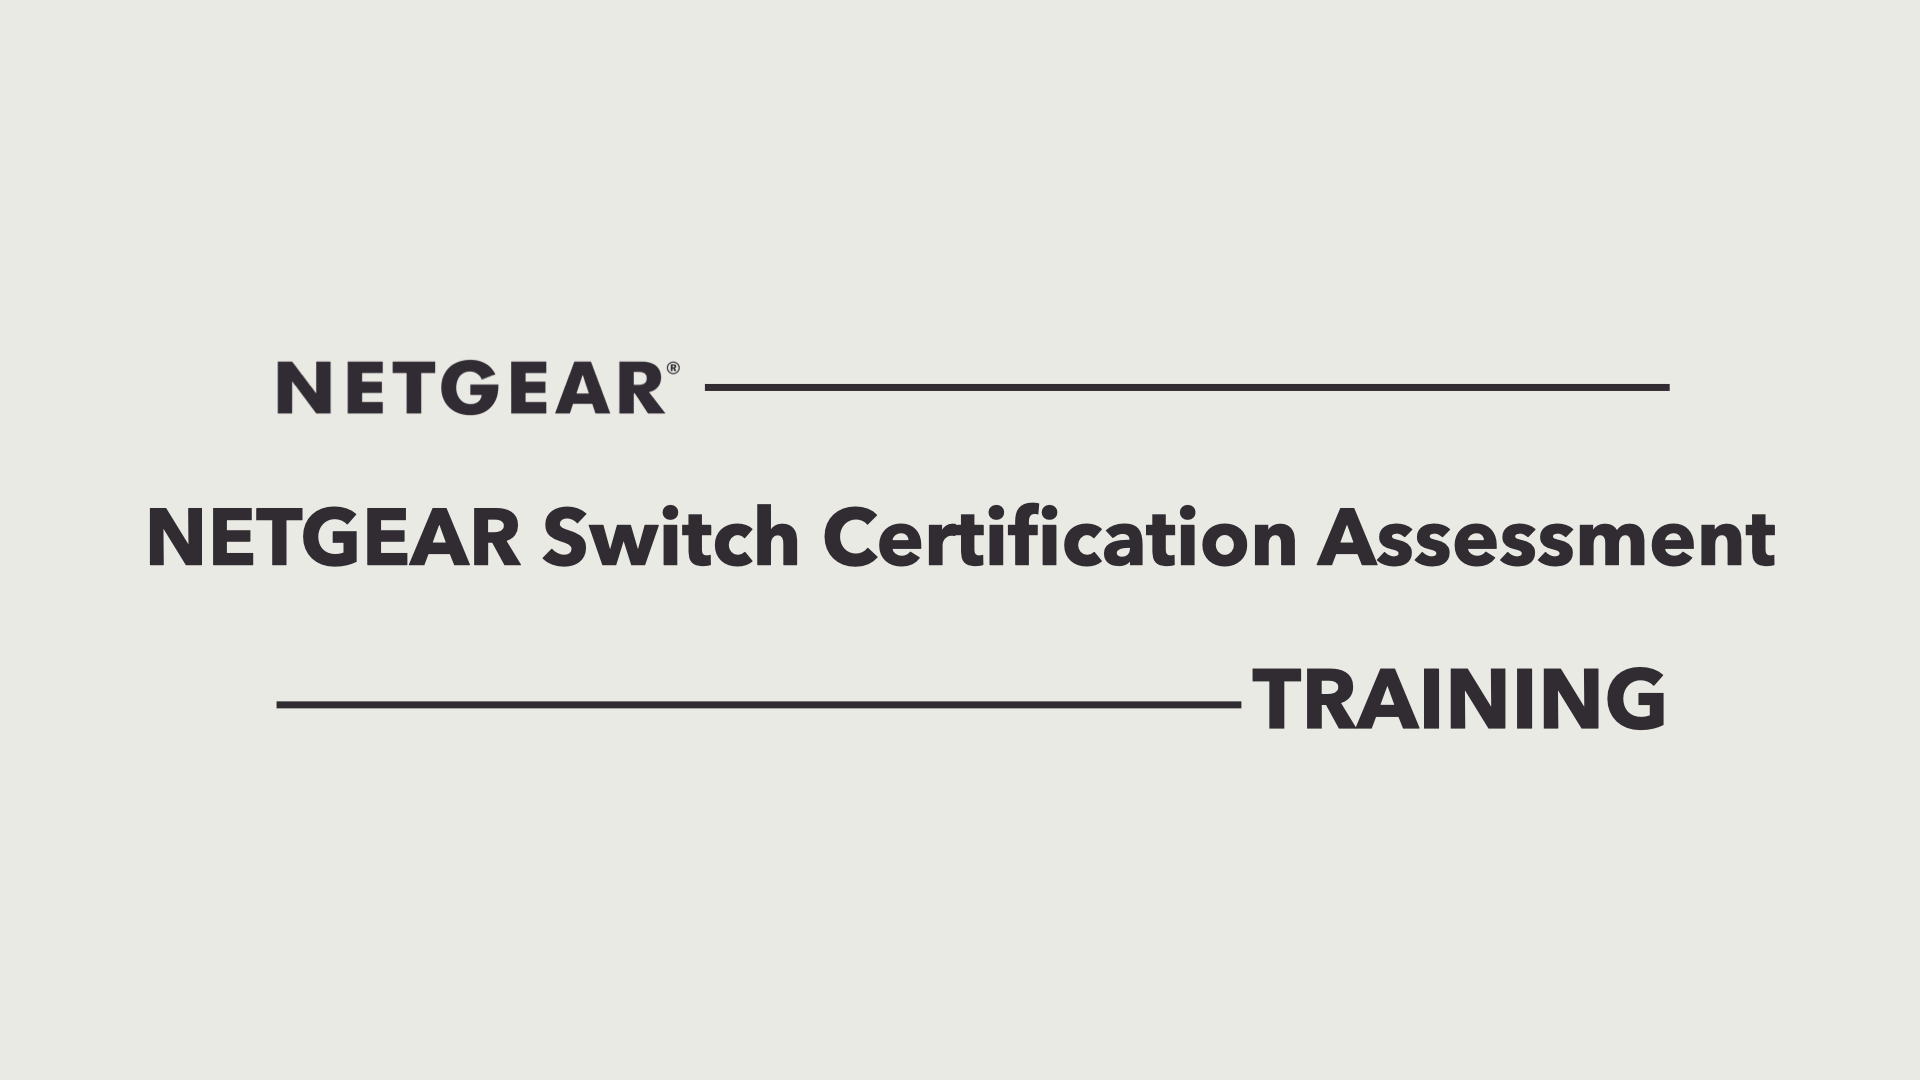 NETGEAR Switch Certification Assessment